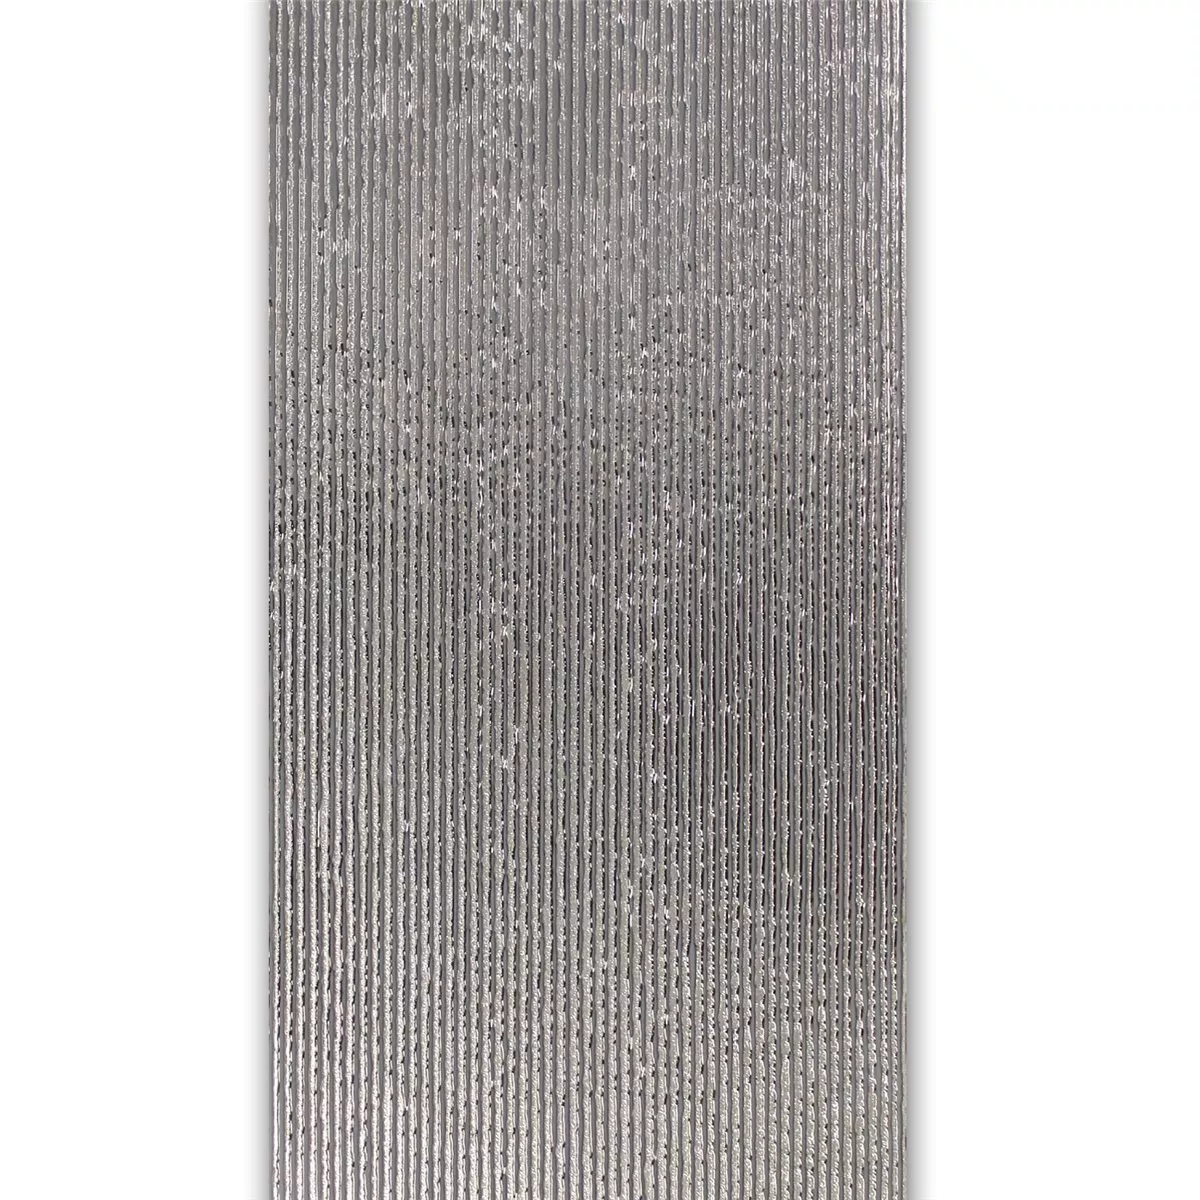 Wand Dekor Fliese Silber 30x60cm